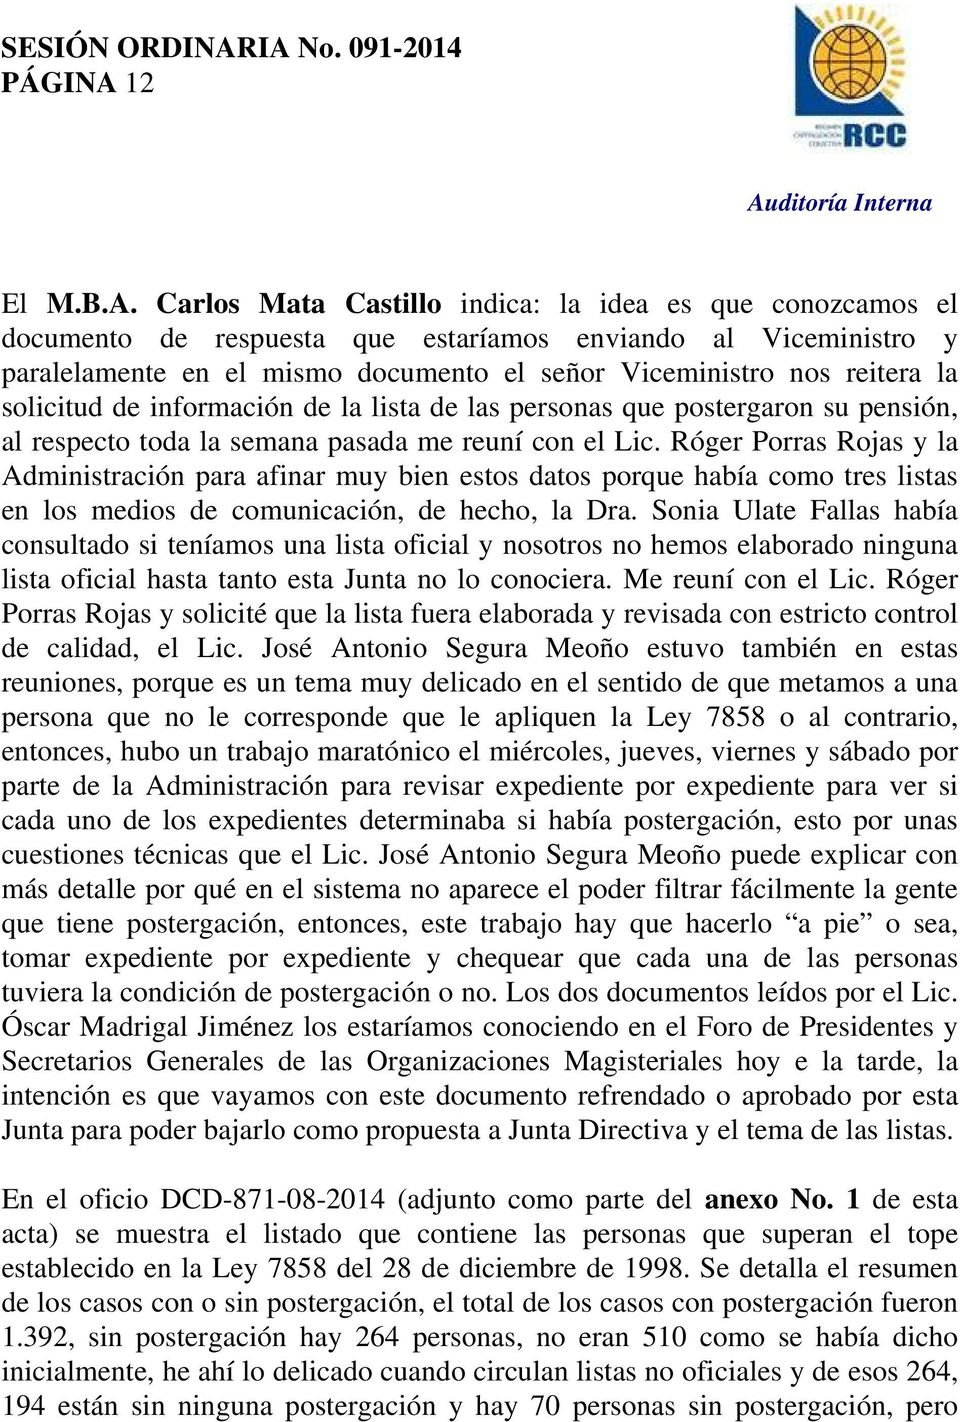 Carlos Mata Castillo indica: la idea es que conozcamos el documento de respuesta que estaríamos enviando al Viceministro y paralelamente en el mismo documento el señor Viceministro nos reitera la